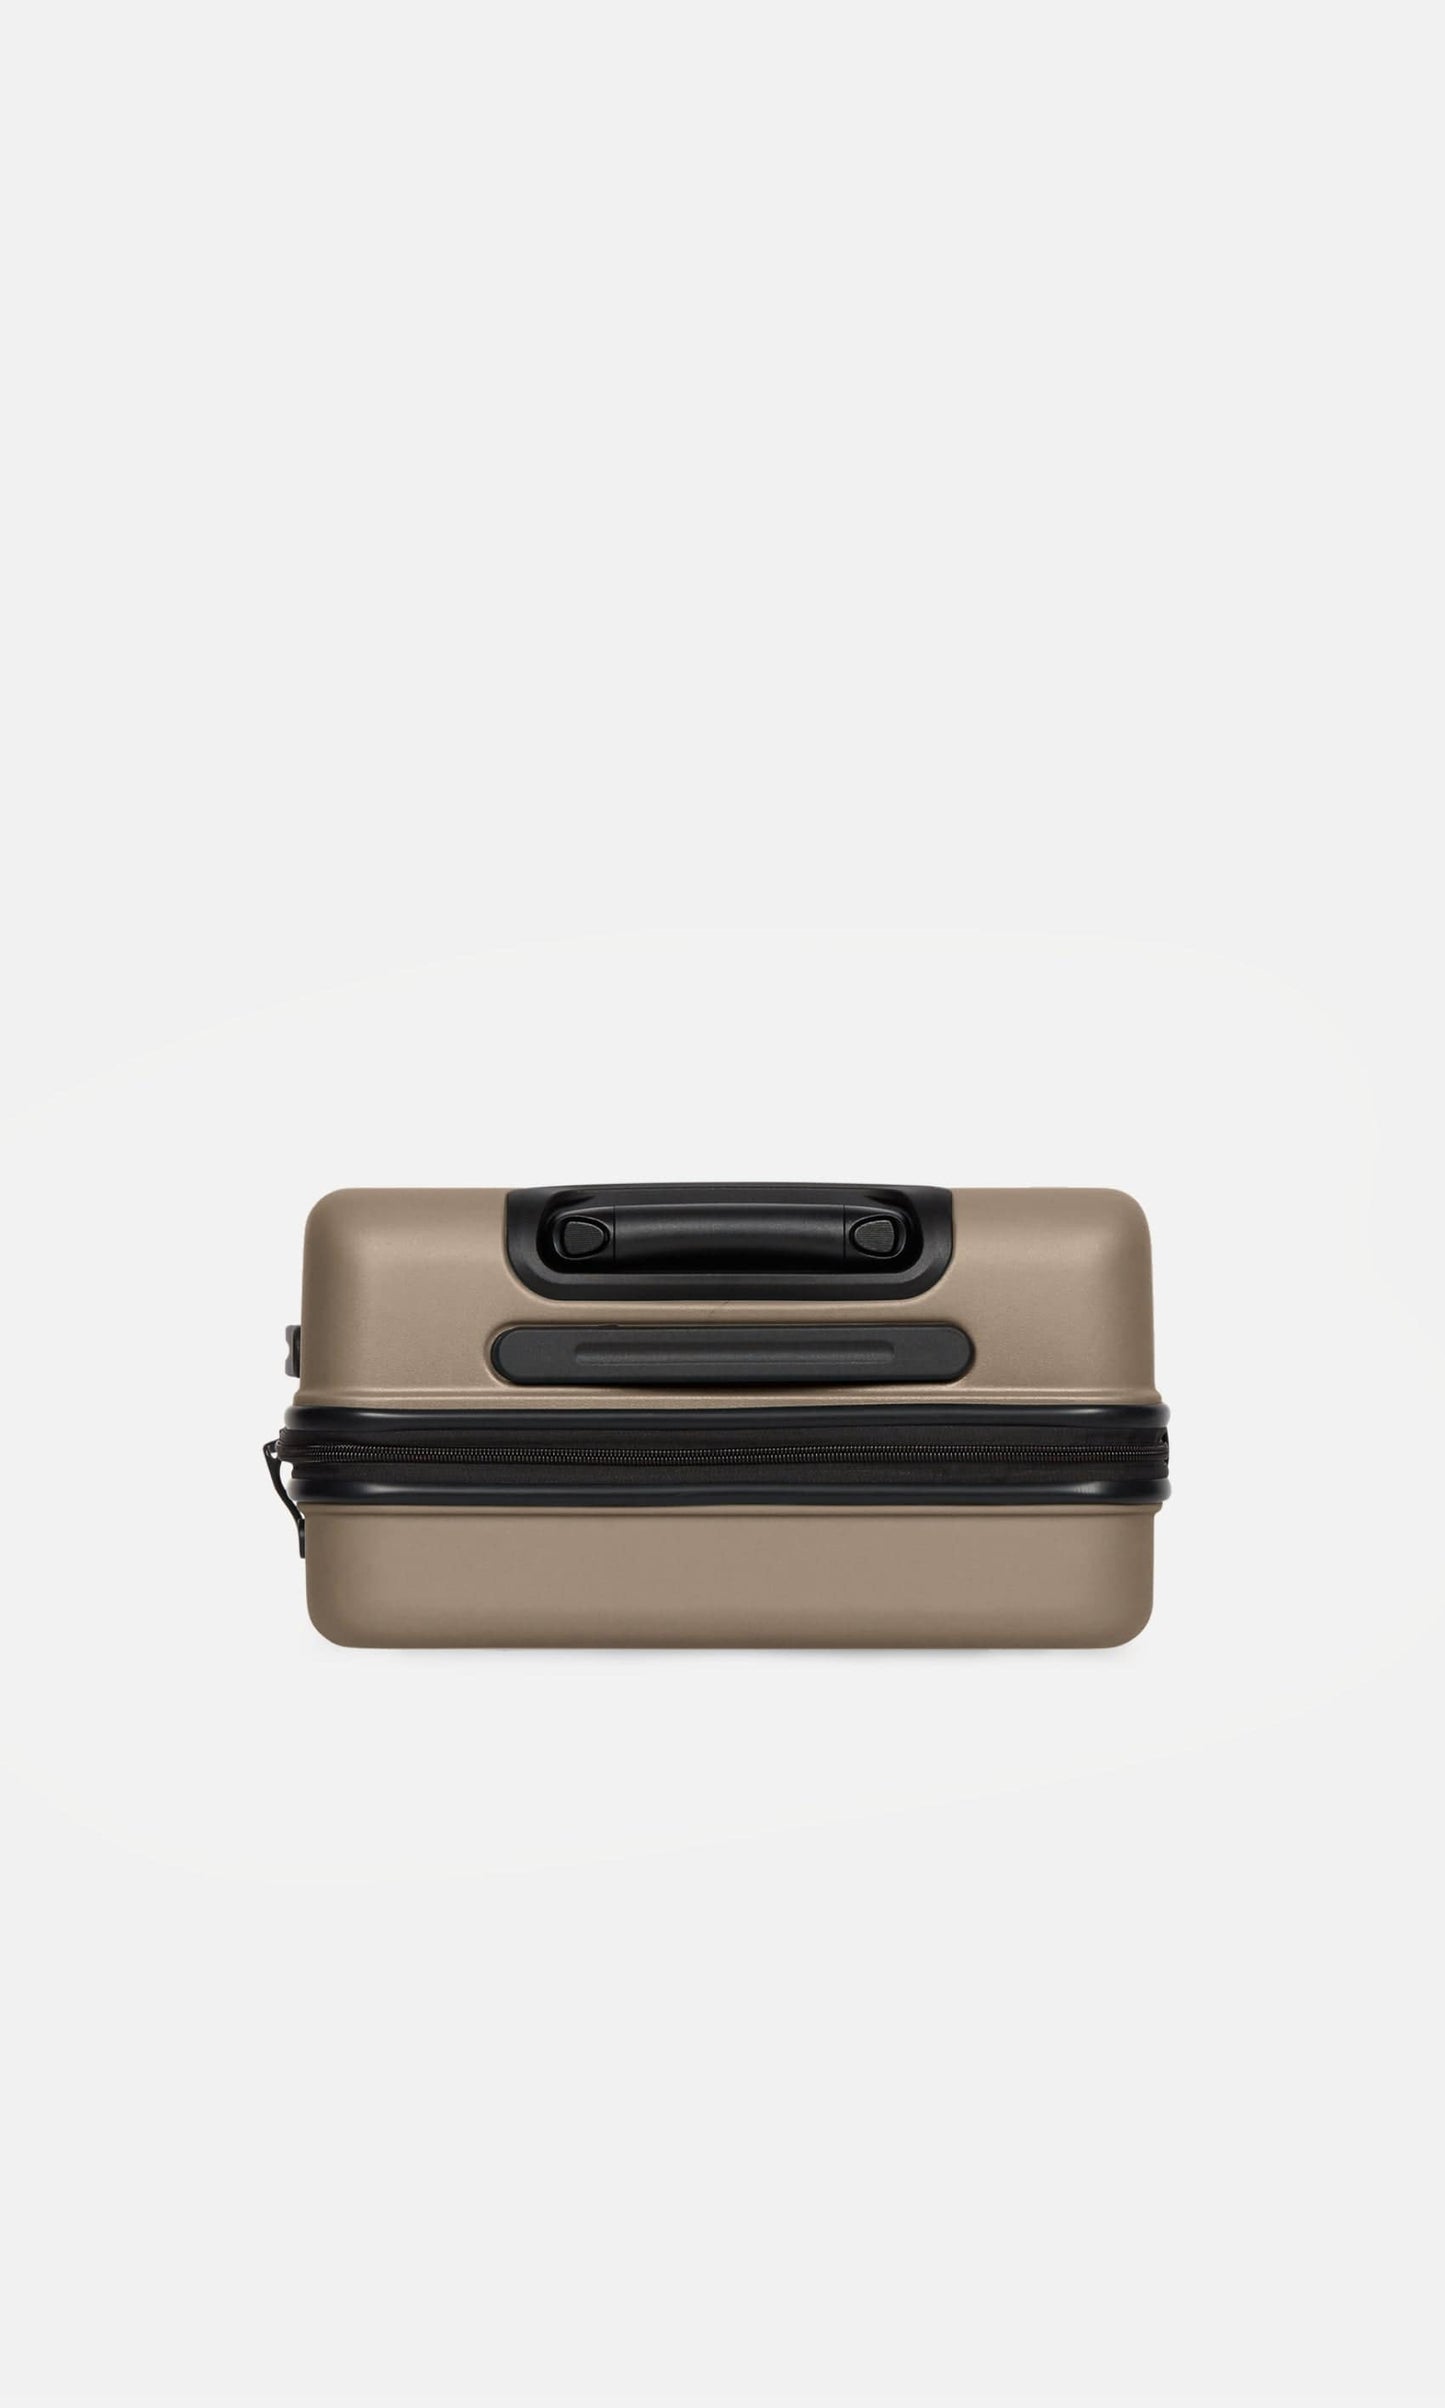 Antler Luggage -  Clifton cabin in oak brown - Hard Suitcases Clifton Cabin Suitcase 55x40x20cm Brown | Hard Suitcase | Antler UK